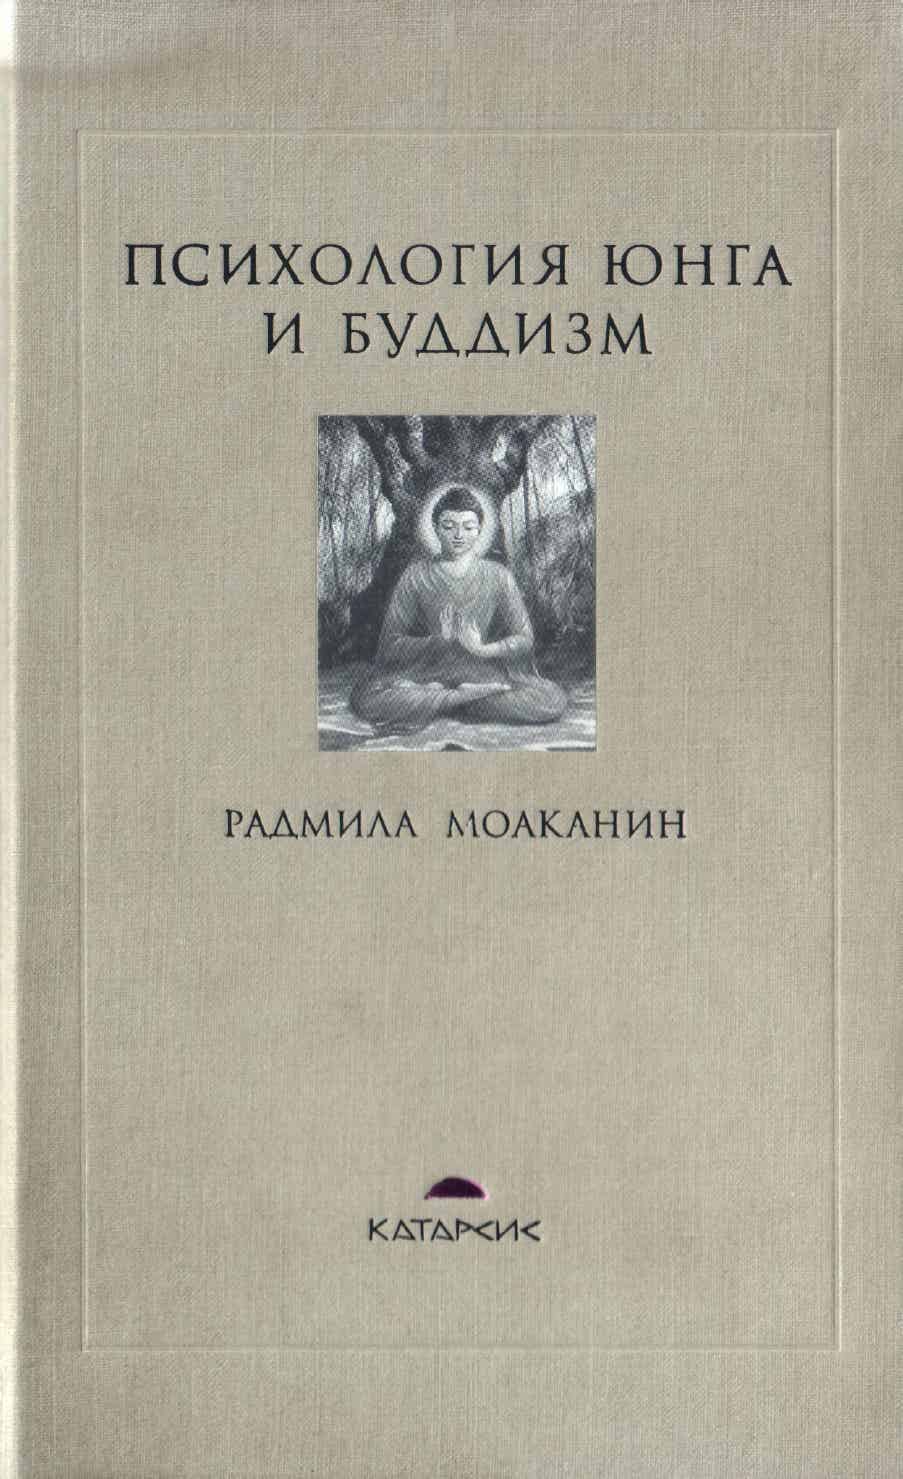 Обложка книги " Психология Юнга и Буддизм "